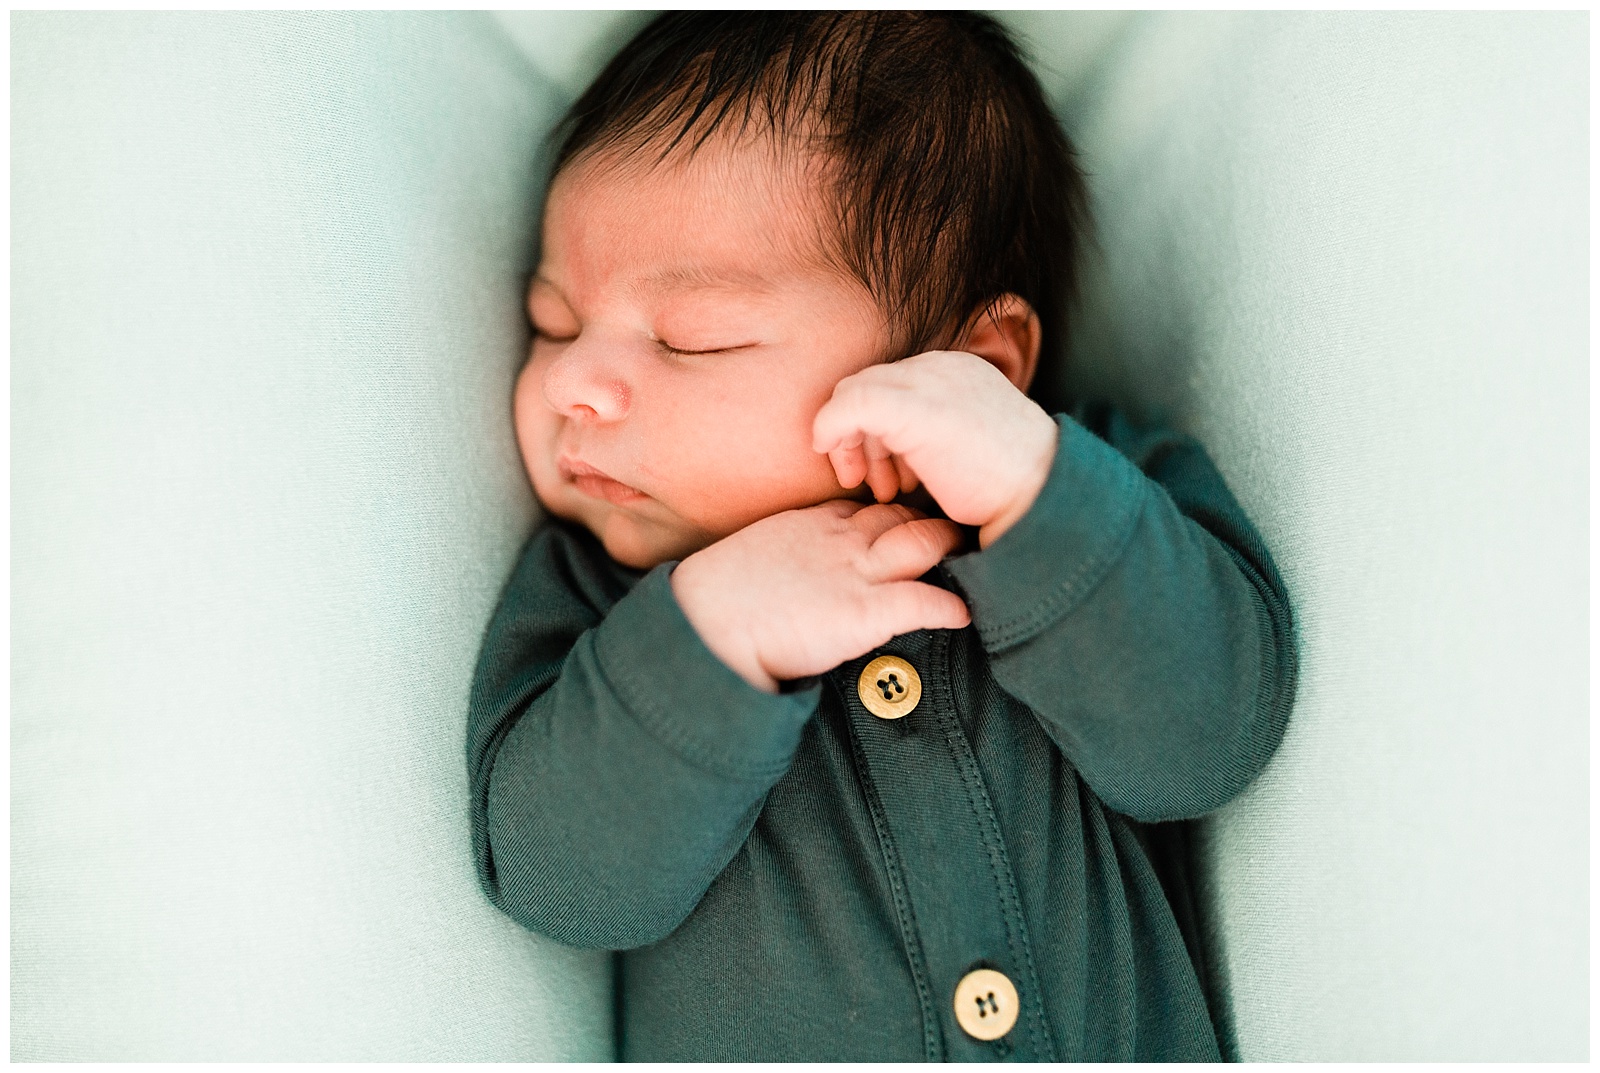 sleeping newborn baby boy in a blue onesie